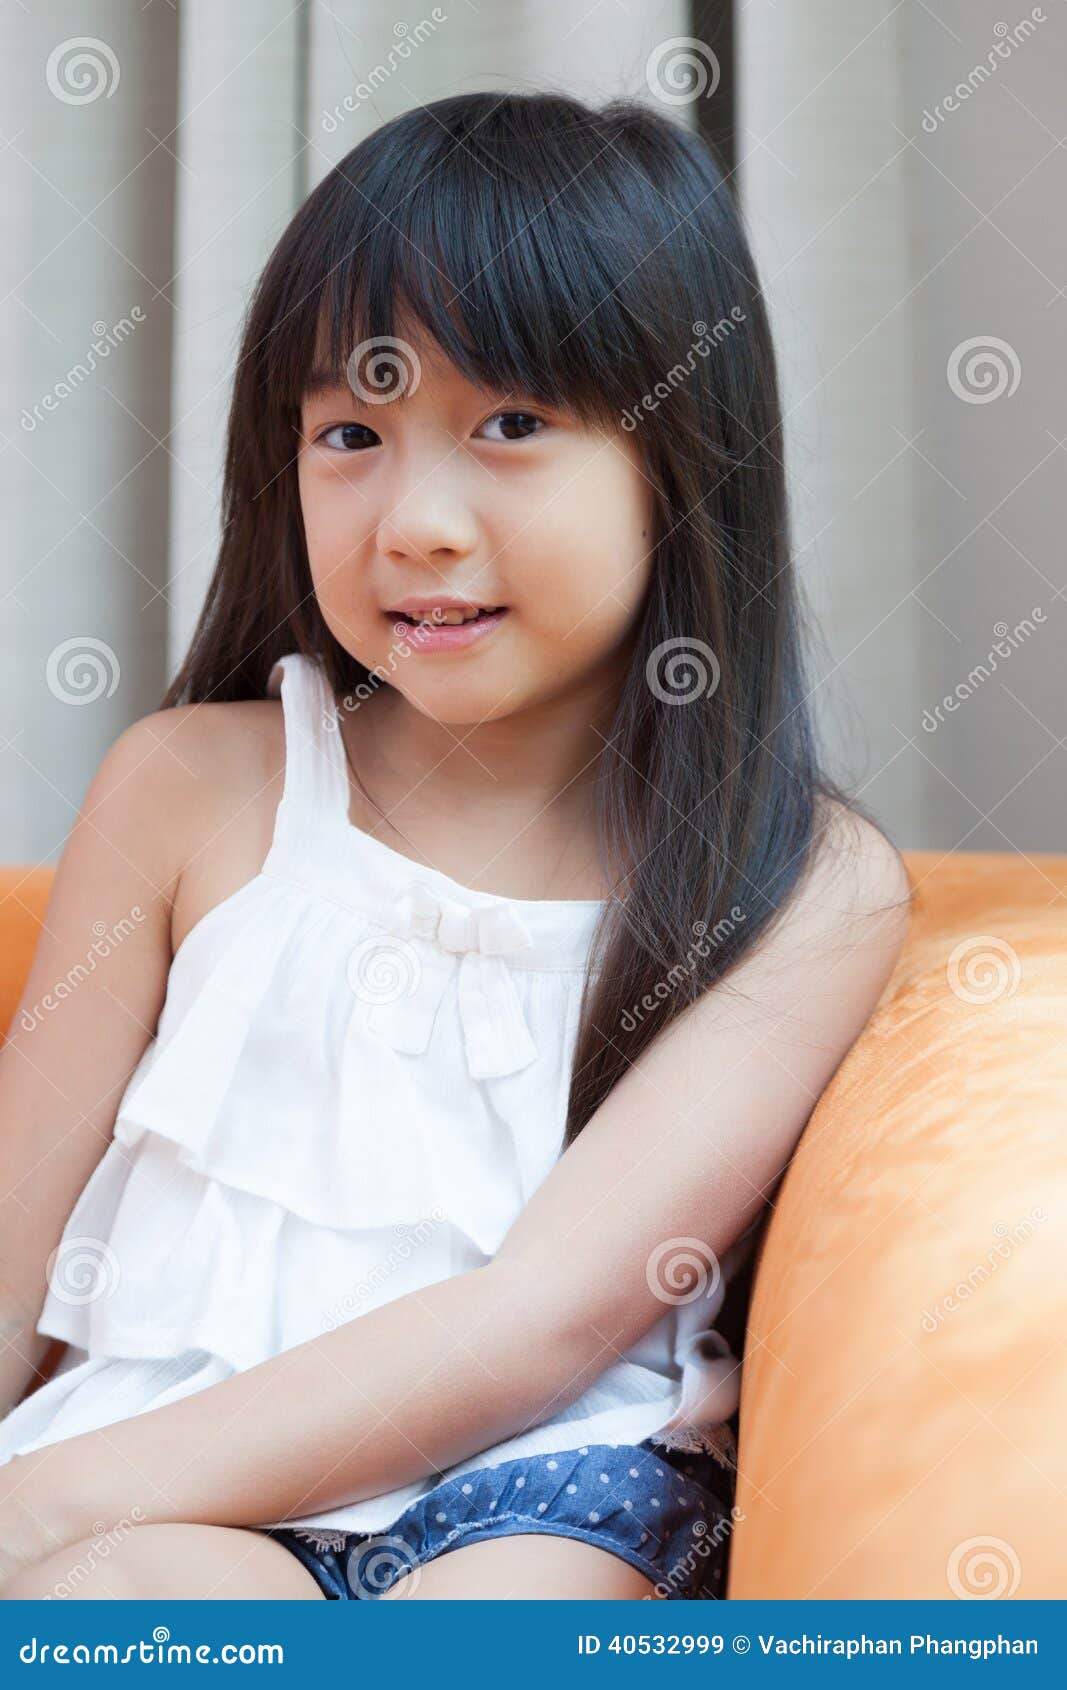 Asia Dziewczyna Obraz Stock O